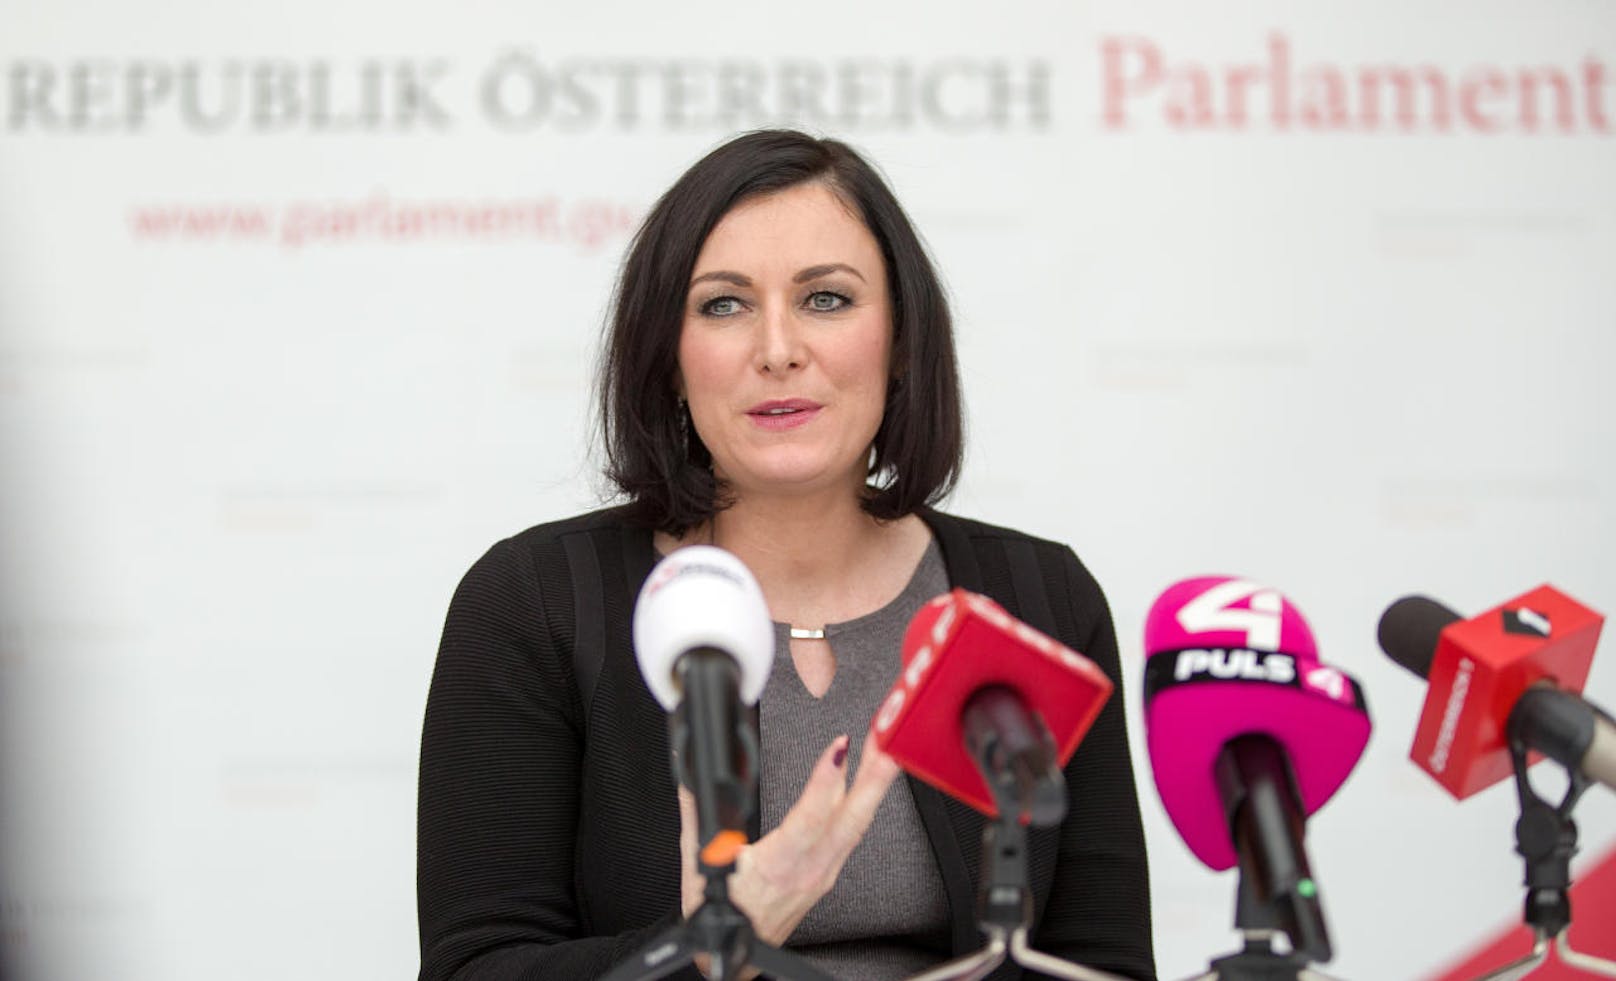 <b>Elisabeth Köstinger (ÖVP)</b> gab ihr Amt als Nationalratspräsidentin bereits nach fünf Wochen wieder auf und übenahm das neue genannte <b>Landwirtschaftsministerium</b>. Für ihren Vorgänger Andrää Rupprechter (ÖVP) war im neuen Ministerteam offenbar kein Platz mehr.